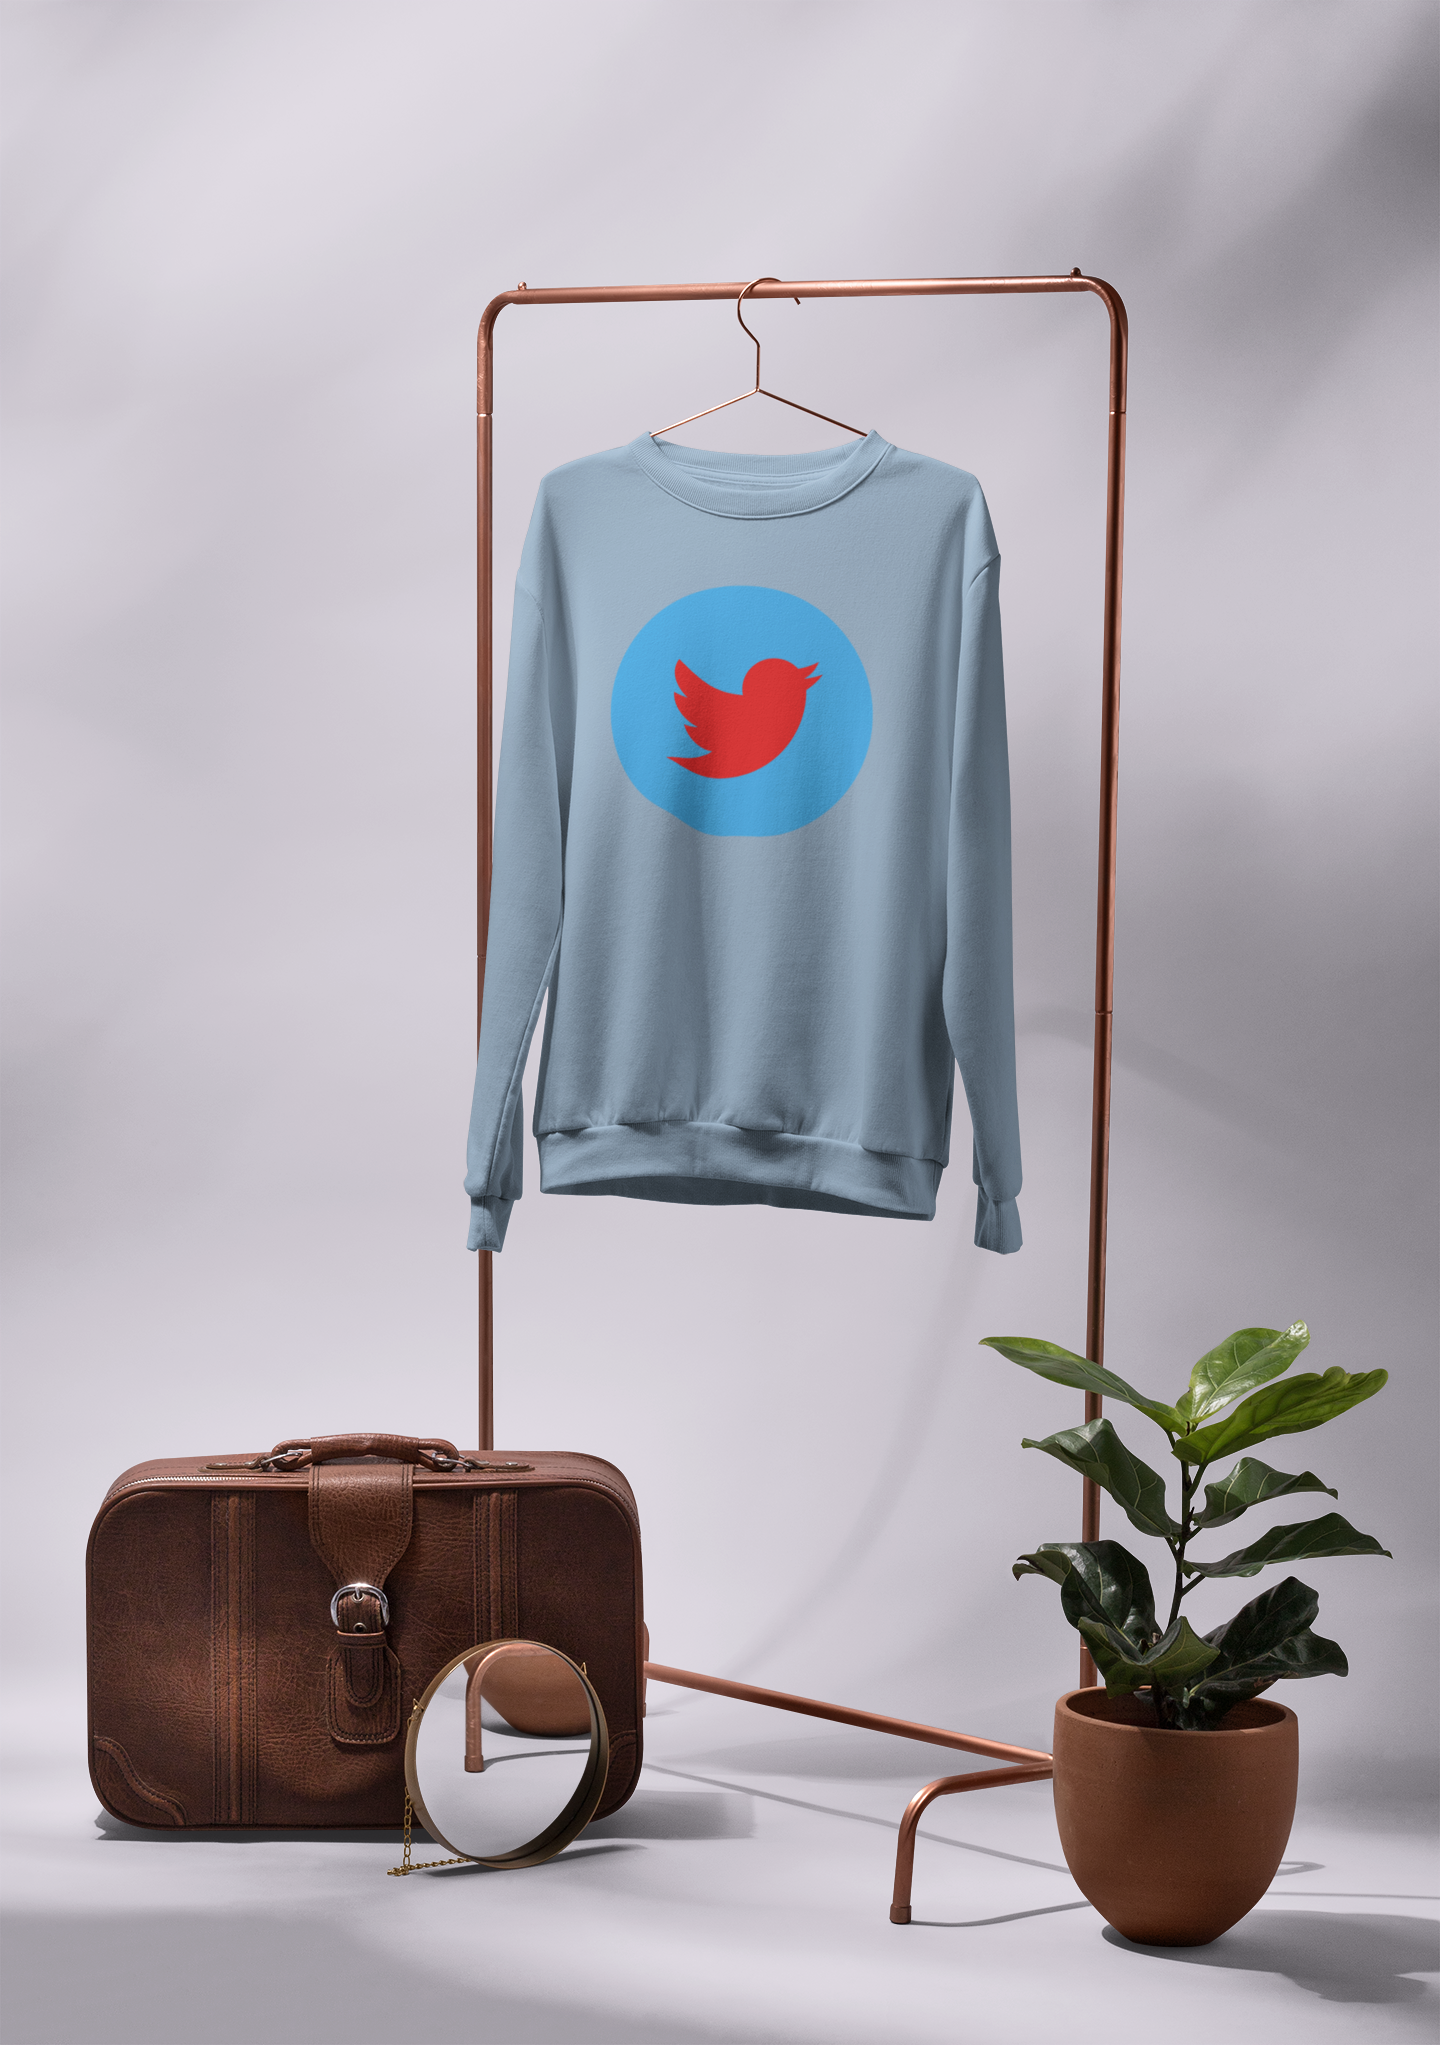 Twitter Blue/Red Sweatshirt Unisex